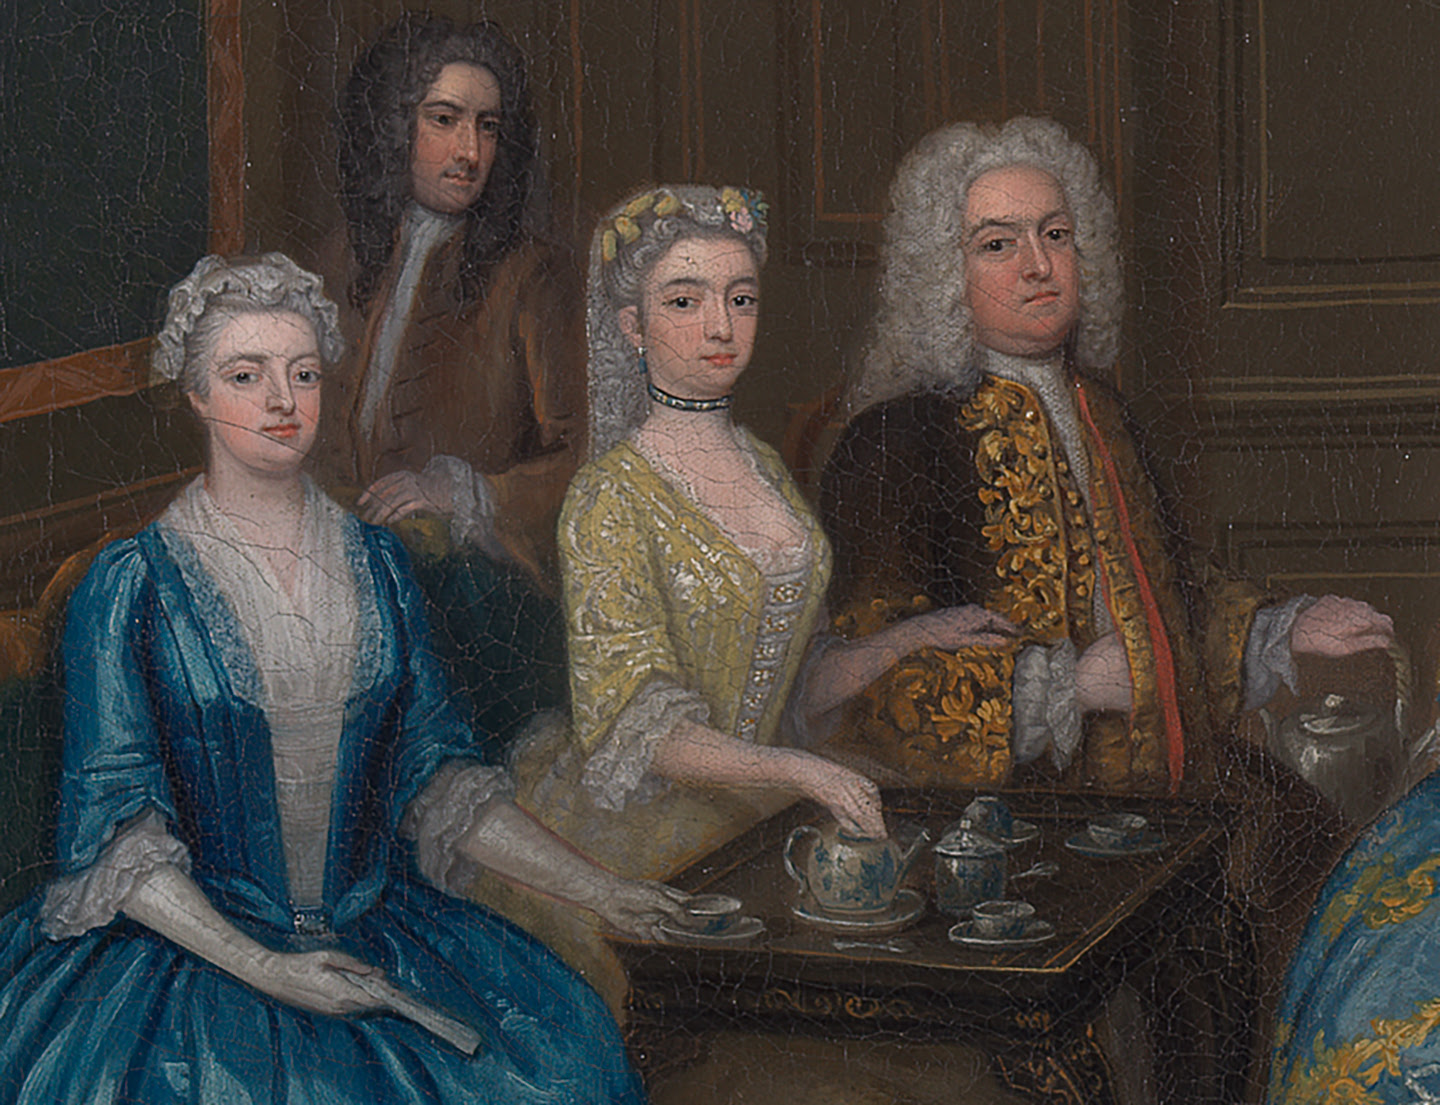 Chi tiết bộ dụng cụ thưởng trà trong bức tranh “Tea Party at Lord Harrington’s House, St. James’s” (Tiệc trà tại tư gia của Ngài Harrington ở St. James’s), họa sỹ Charles Philips, năm 1730. (Ảnh: Tư liệu công cộng)